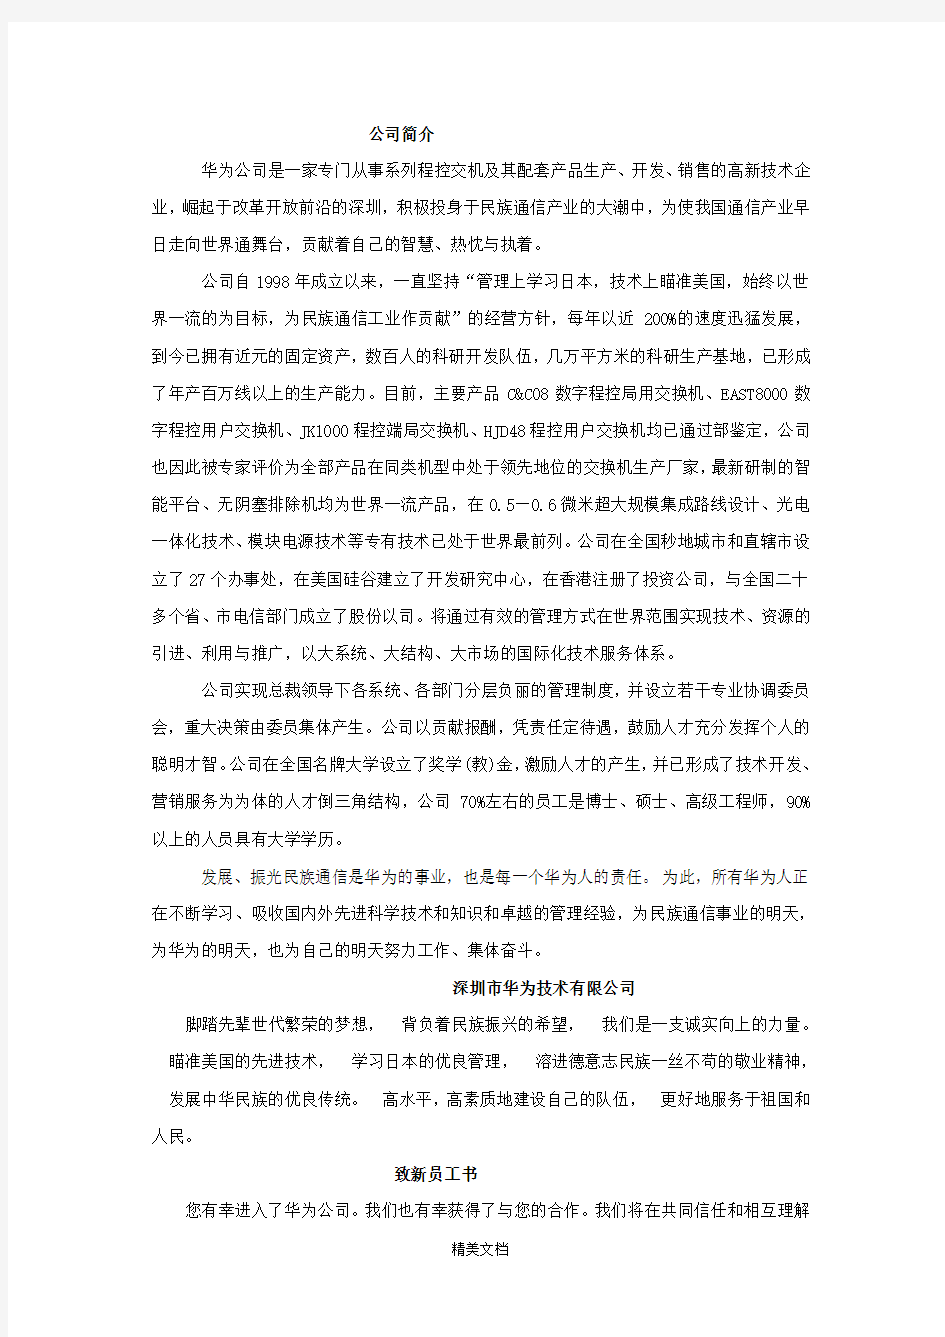 深圳市华为技术有限公司人事管理制度